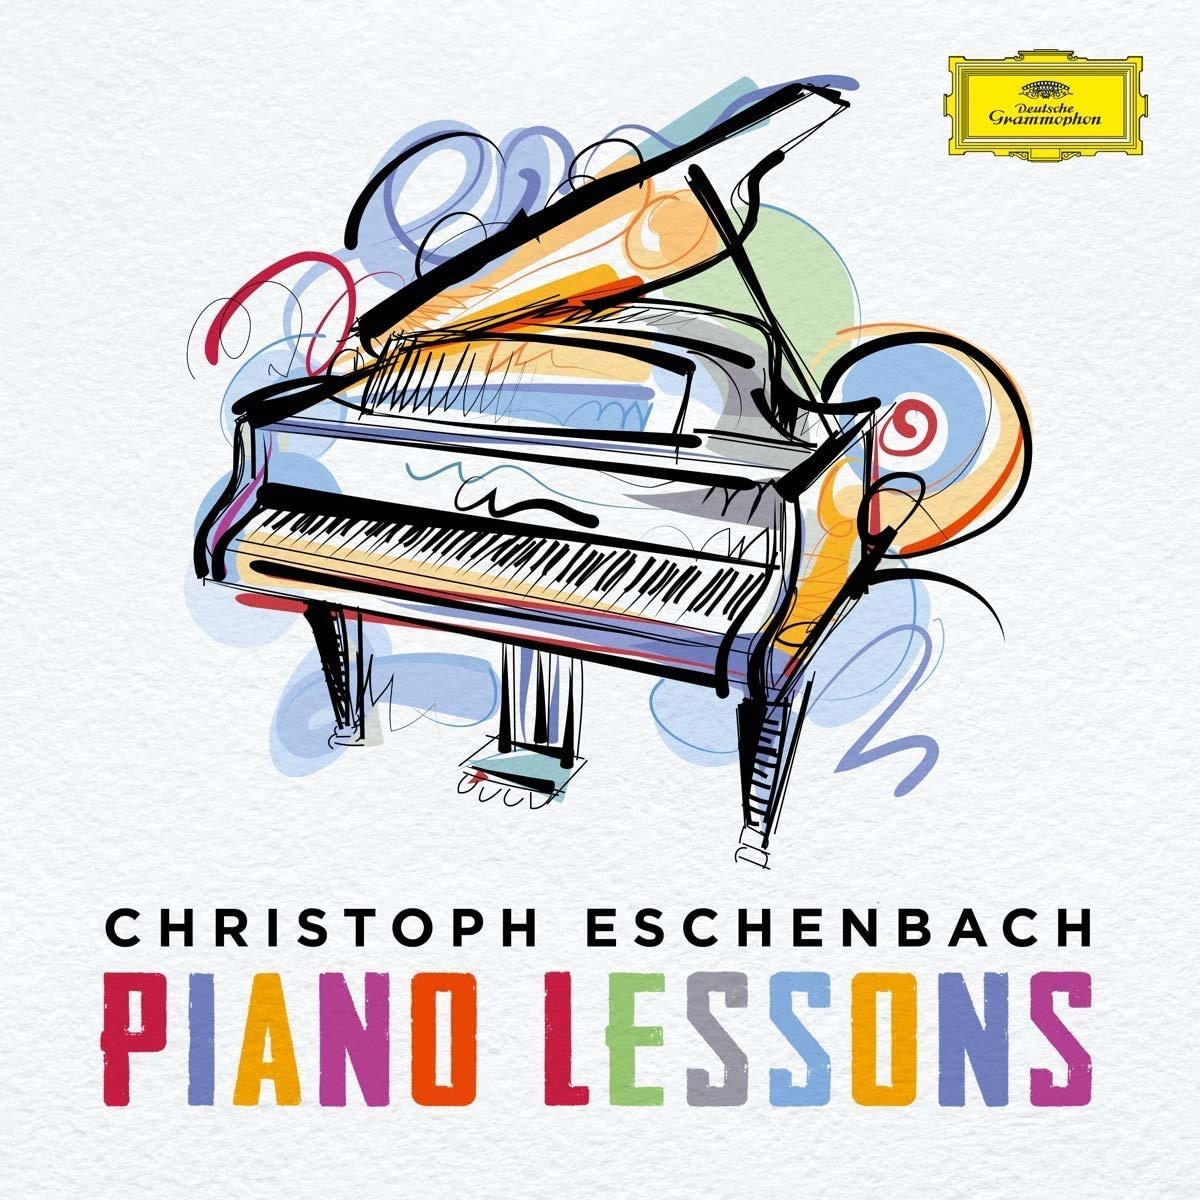 Audio Cd Christoph Eschenbach: Piano Lessons 16 Cd NUOVO SIGILLATO EDIZIONE DEL SUBITO DISPONIBILE